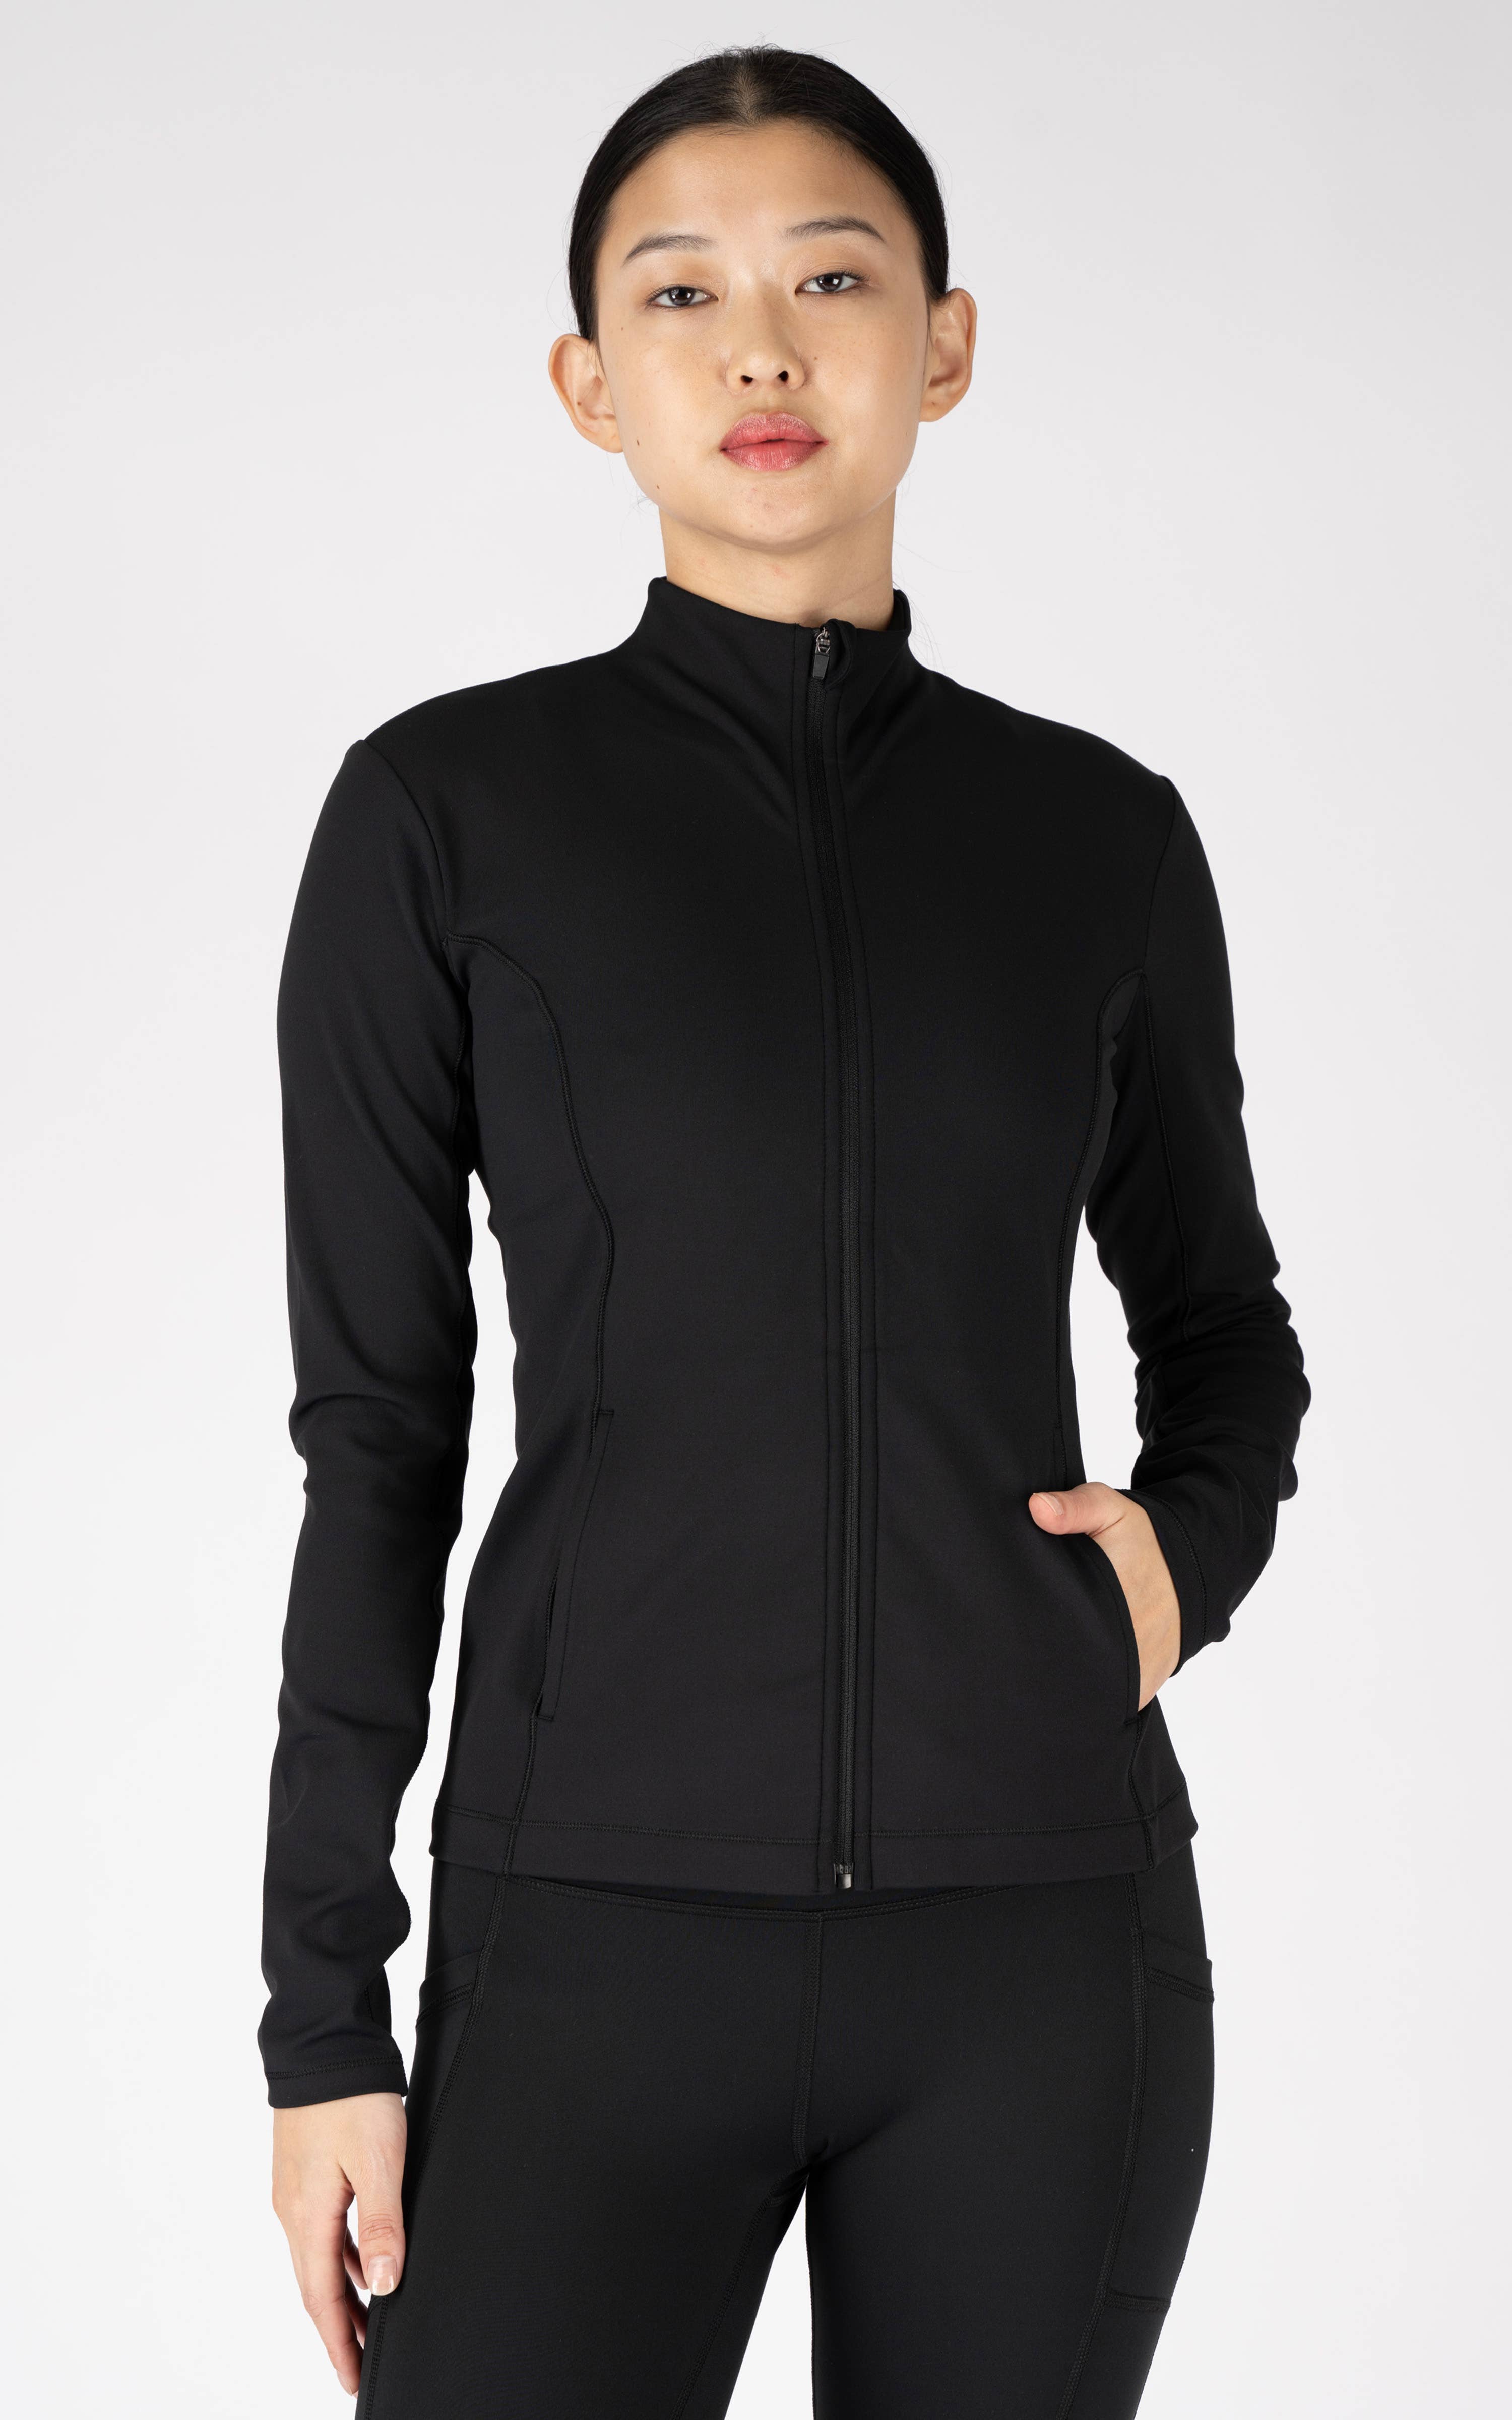 90 Degree By Reflex Jacket Women's Gray Striped Full Zip Long Sleeve Size L